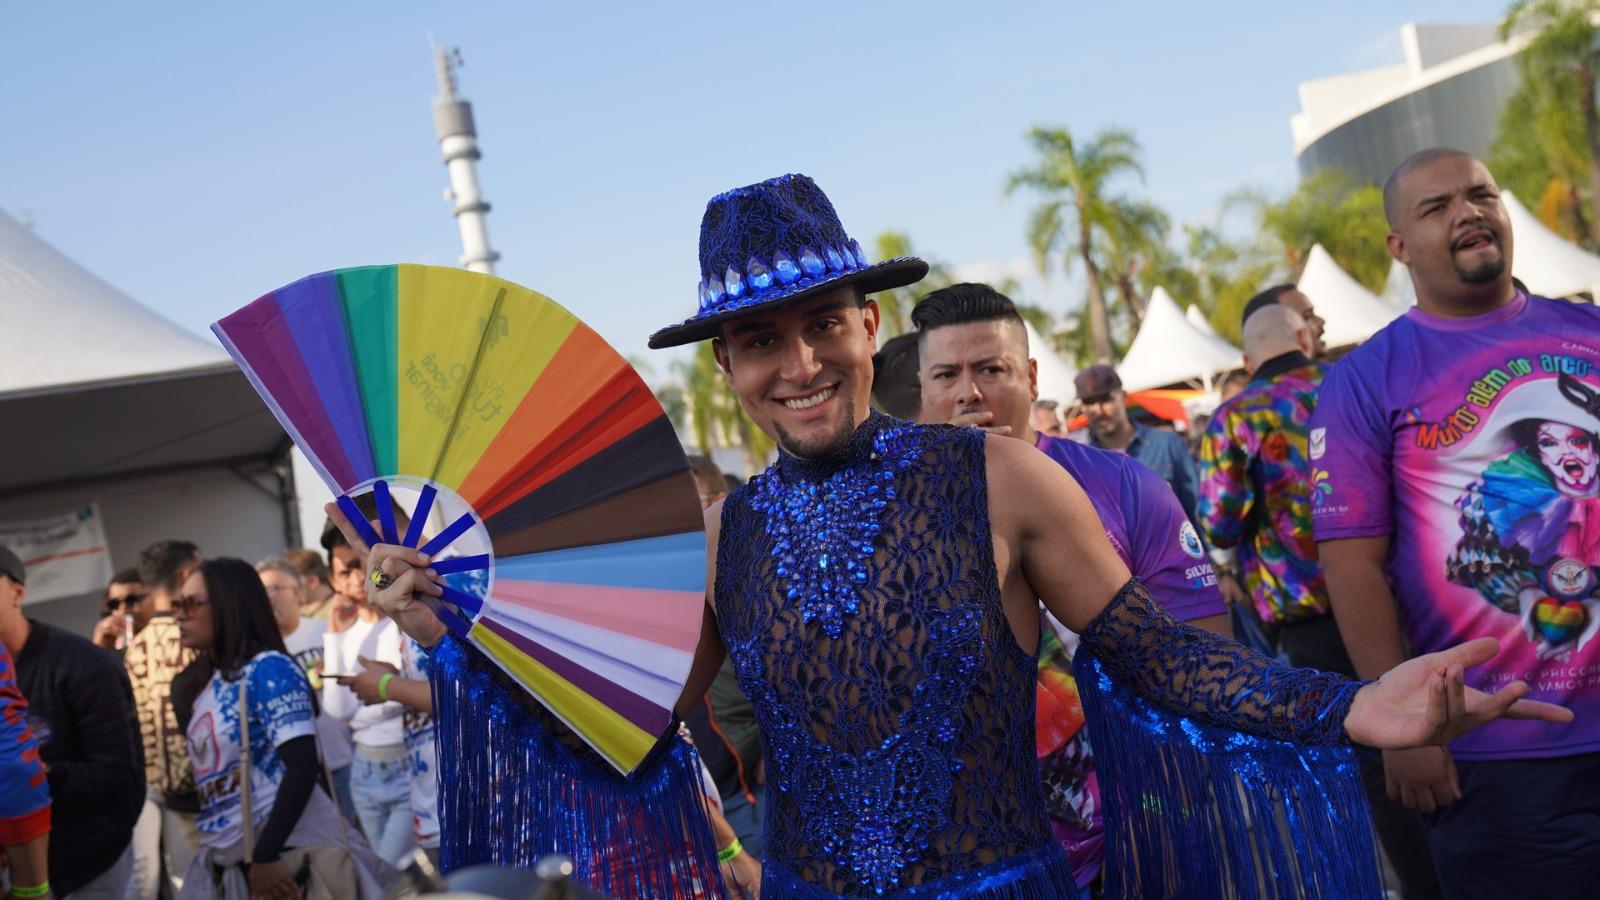 Terceiro Milênio é atração na Parada do Orgulho LGBT+neste domingo